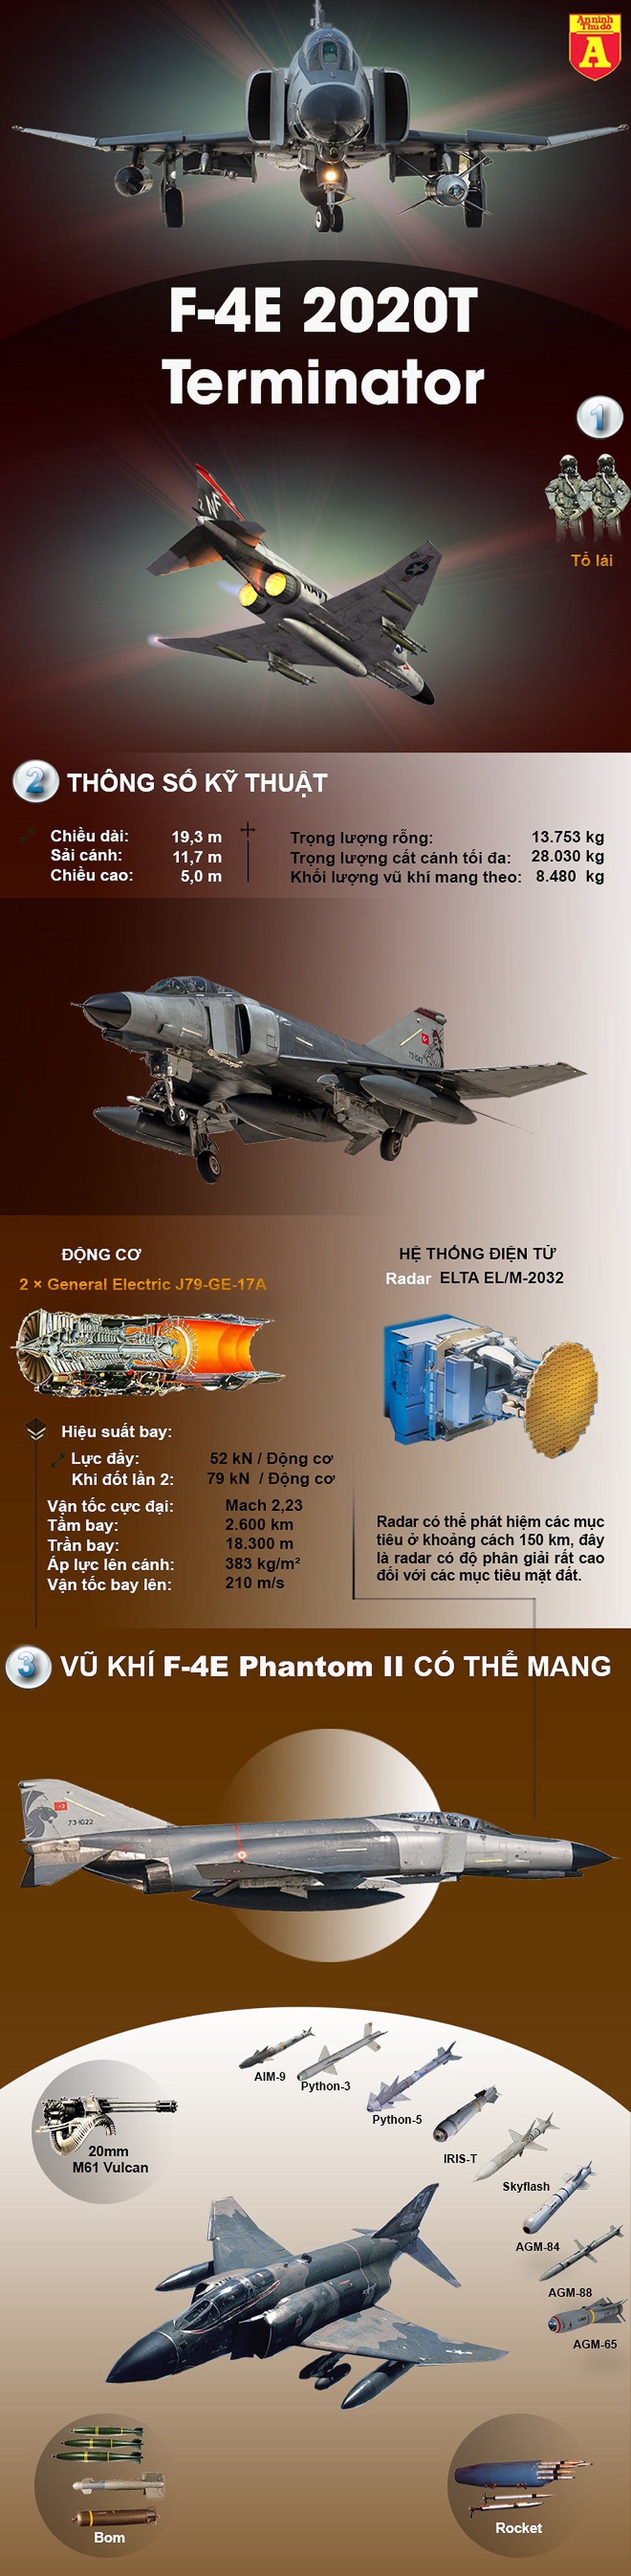 [Infographics] Từ "con ma" biến thành "kẻ hủy diệt" Su-27, Israel đã làm gì với tiêm kích F-4 Mỹ? - Ảnh 1